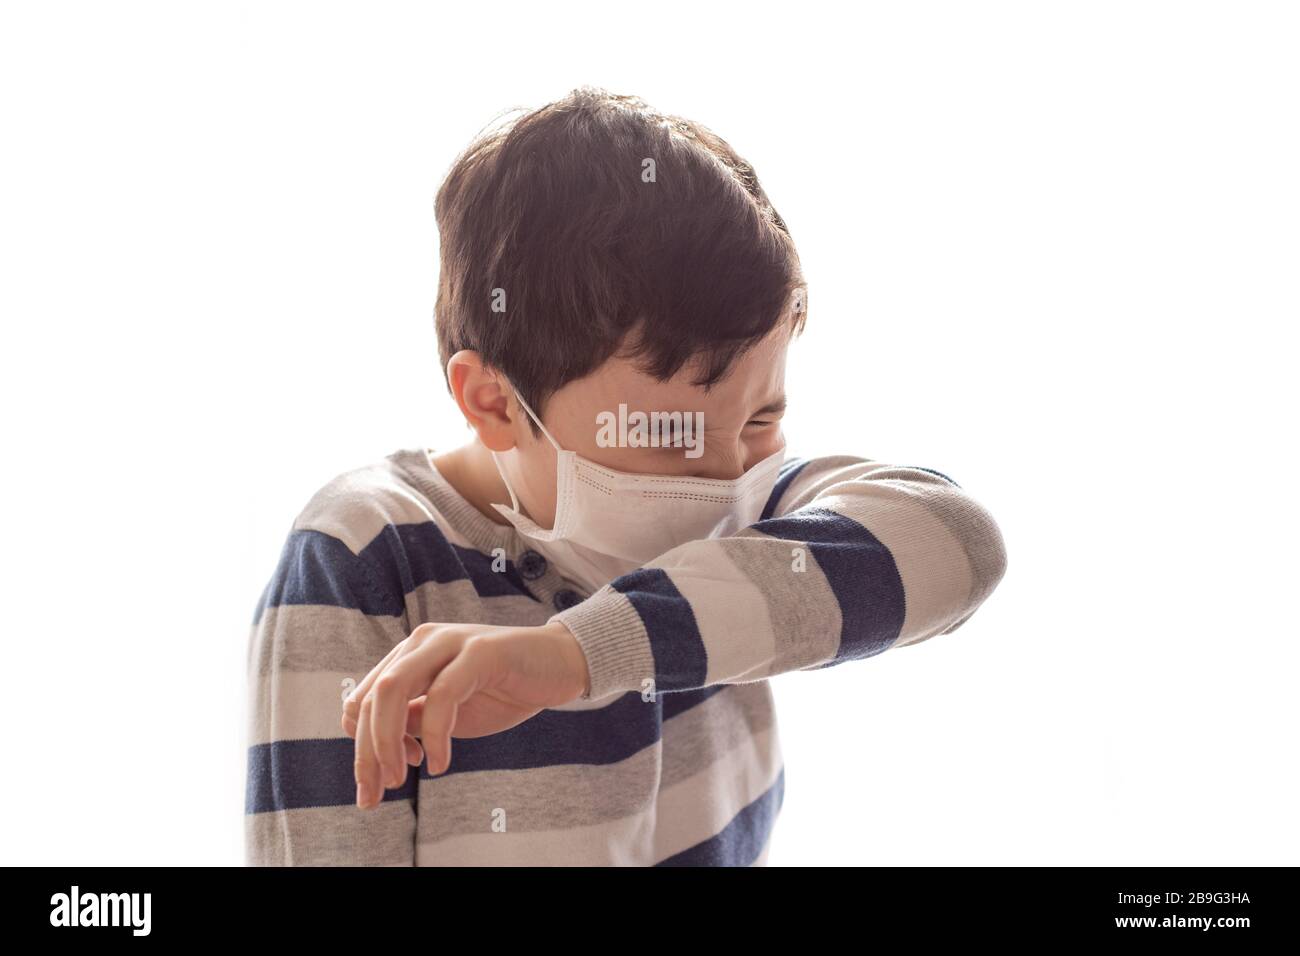 Ein Junge mit gequetteten Augen und einer weißen medizinischen Maske niest oder hustet in seinen Ellenbogen. Weißer Hintergrund. Kopierbereich. Influenza, Virus und Epidemie, coron Stockfoto